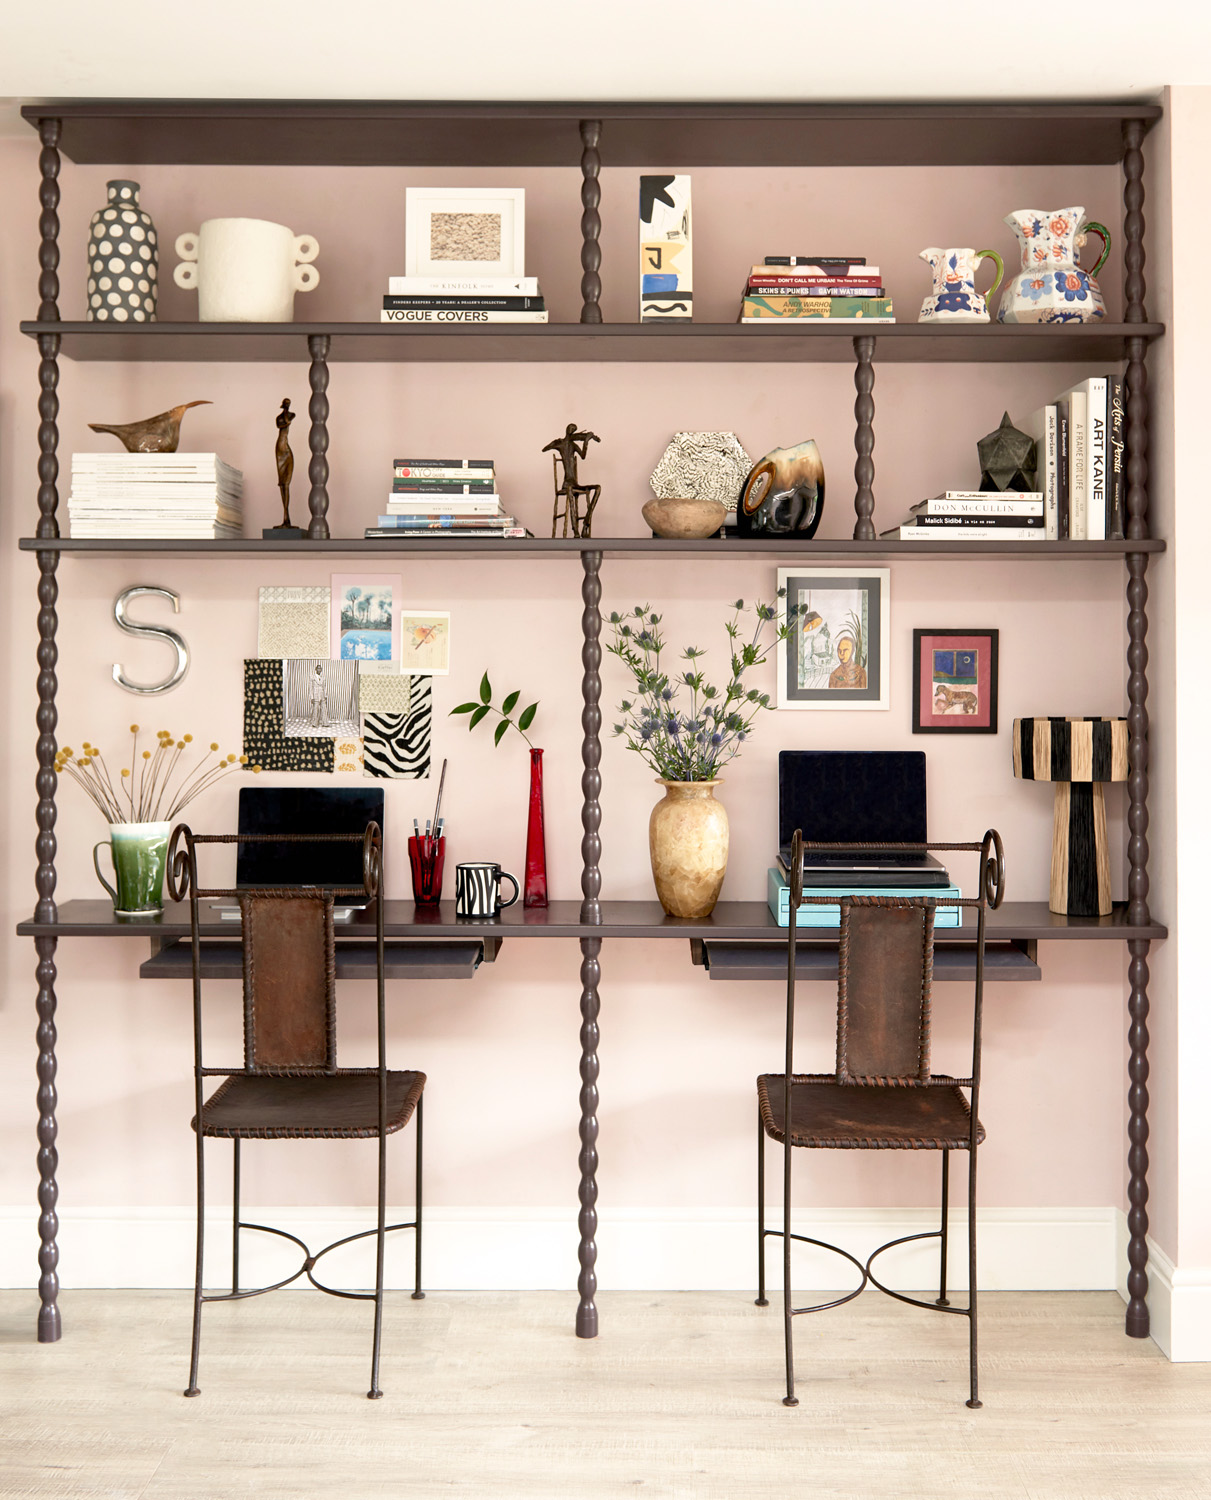 Desk by Sascal - contemporary interior design studio in London